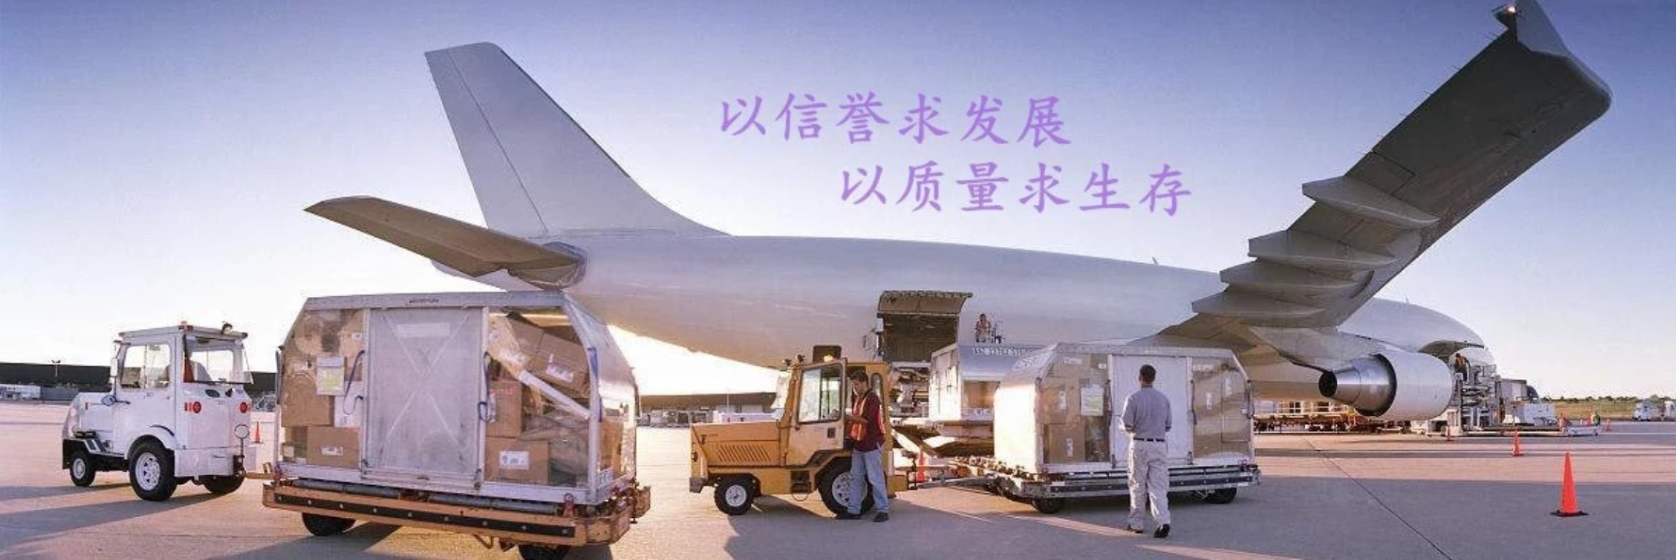 上海港出口到丹麦海运危险品整箱散货拼箱流程和价格